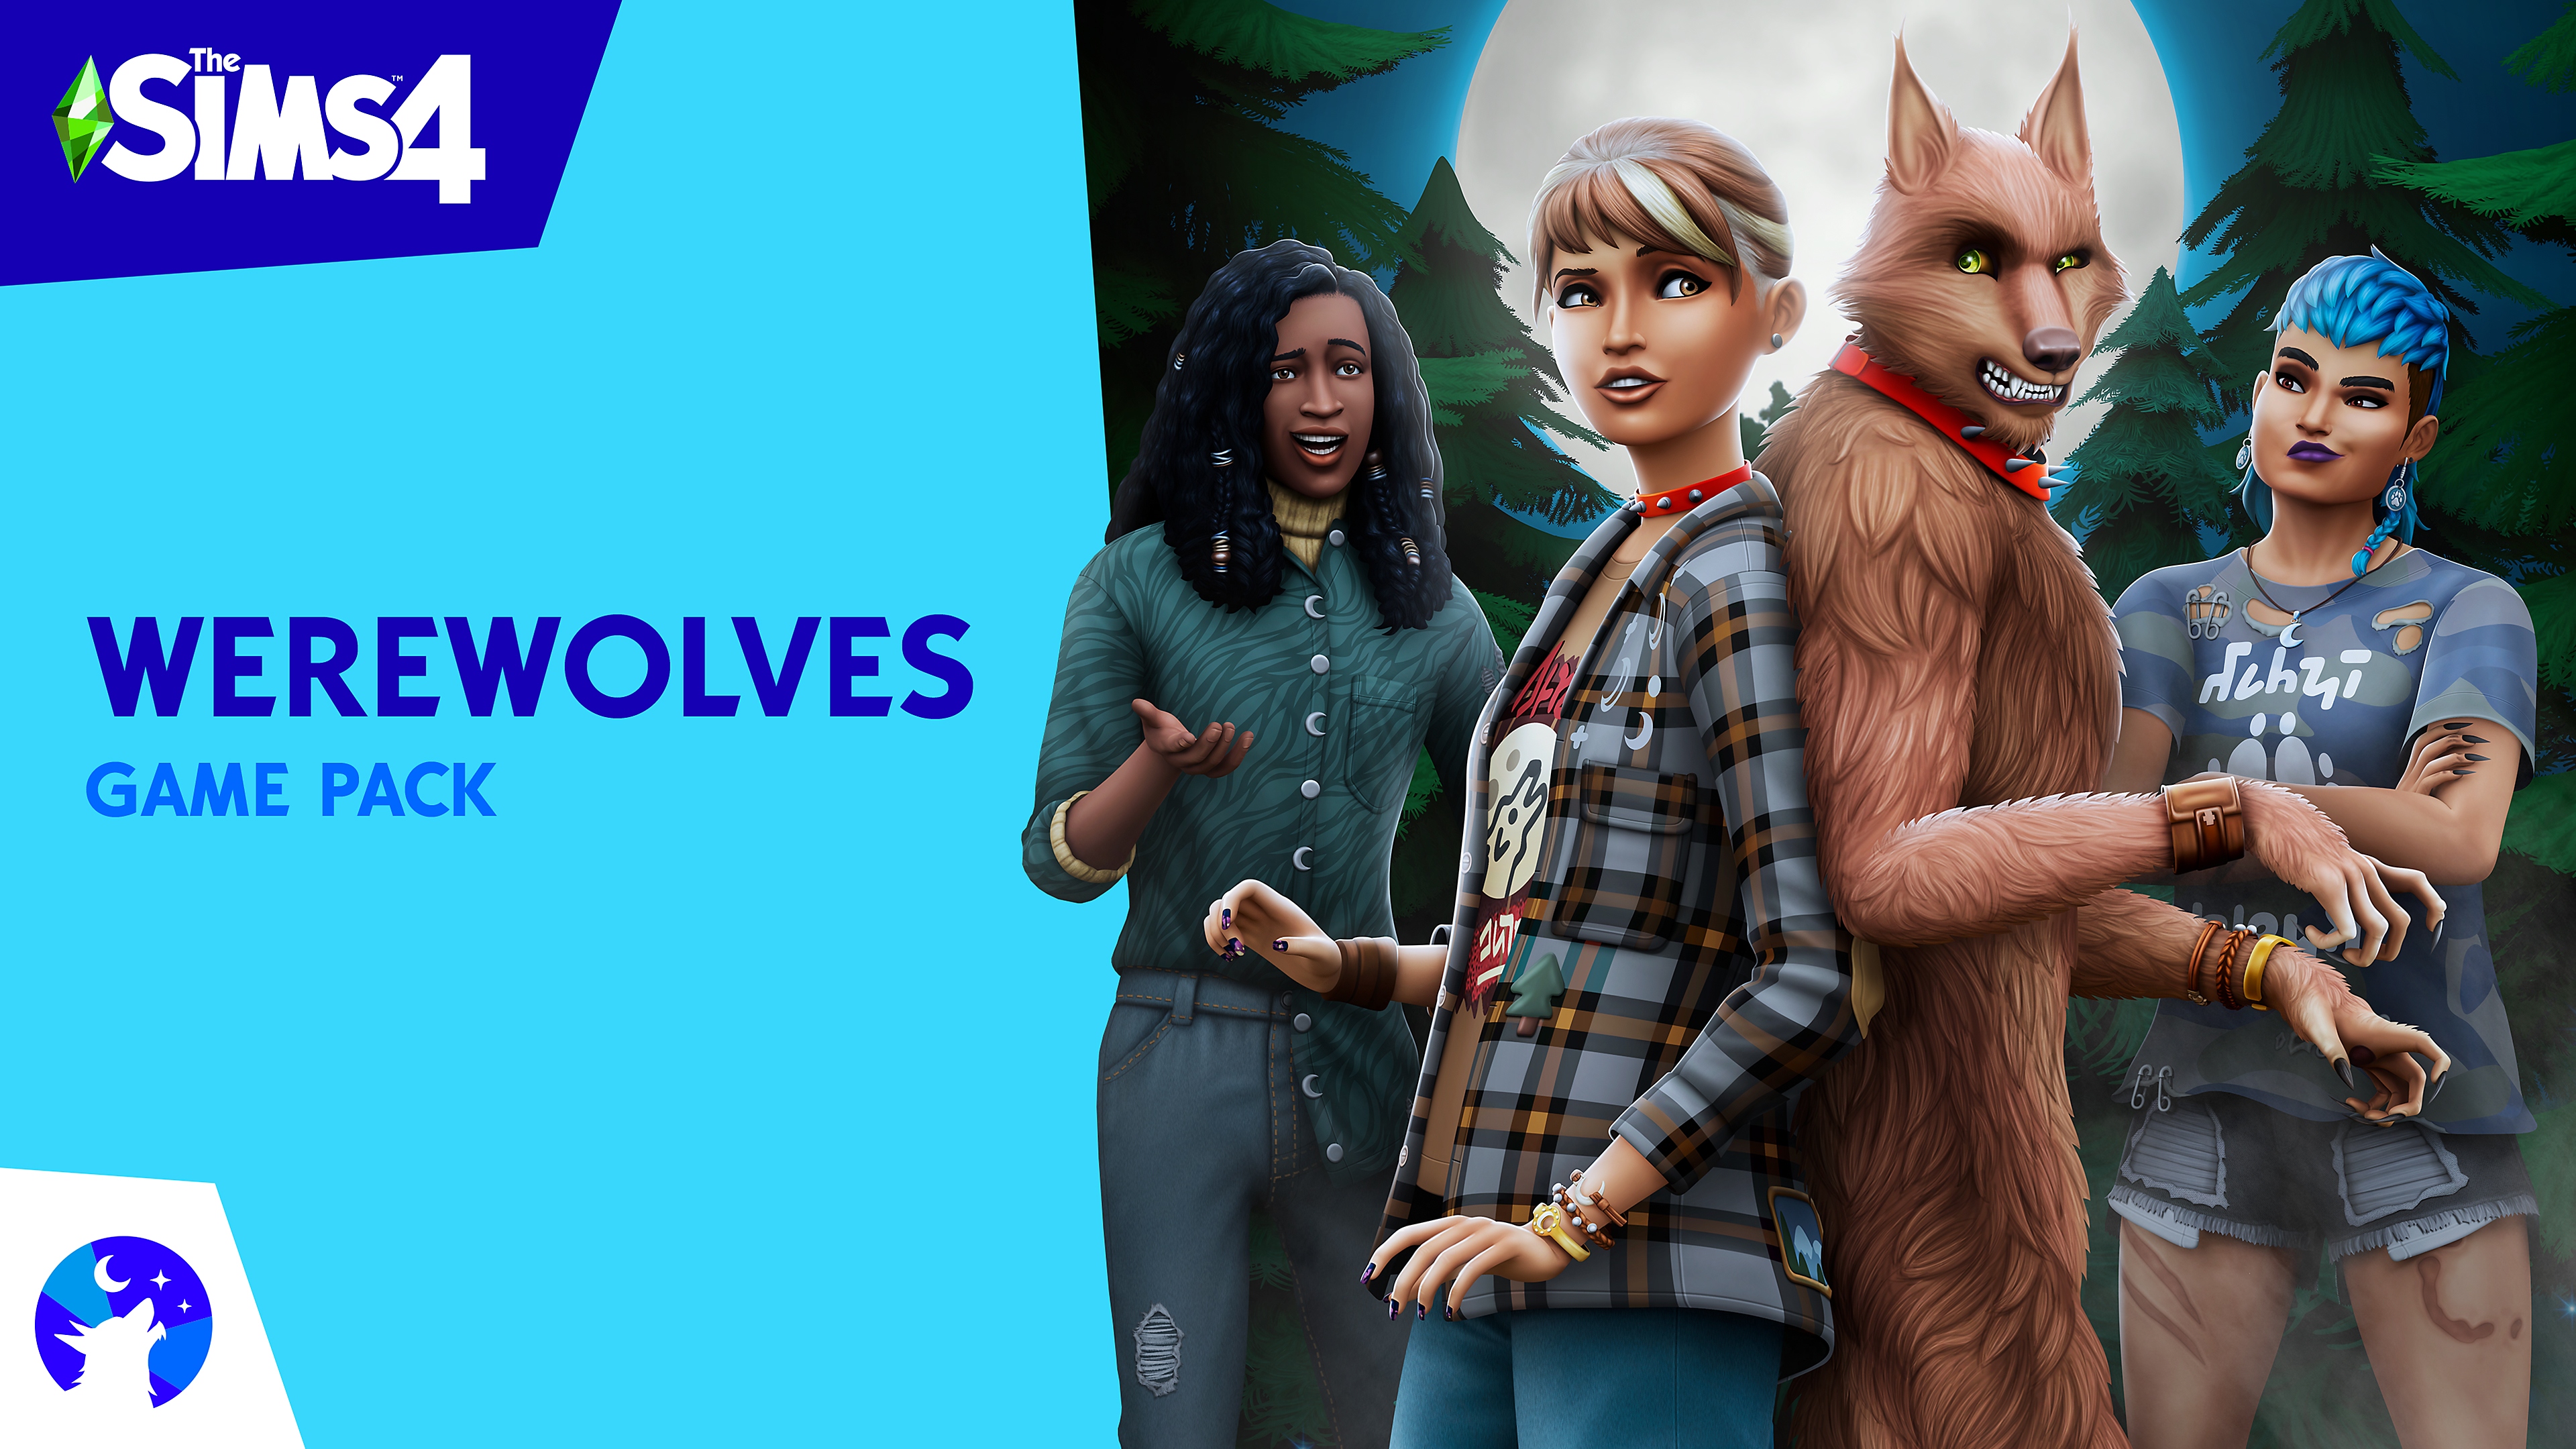 Key-Art von Die Sims 4 zum Werwölfe-Gameplay-Pack, das Sims-Charaktere und einen Werwolf zeigt